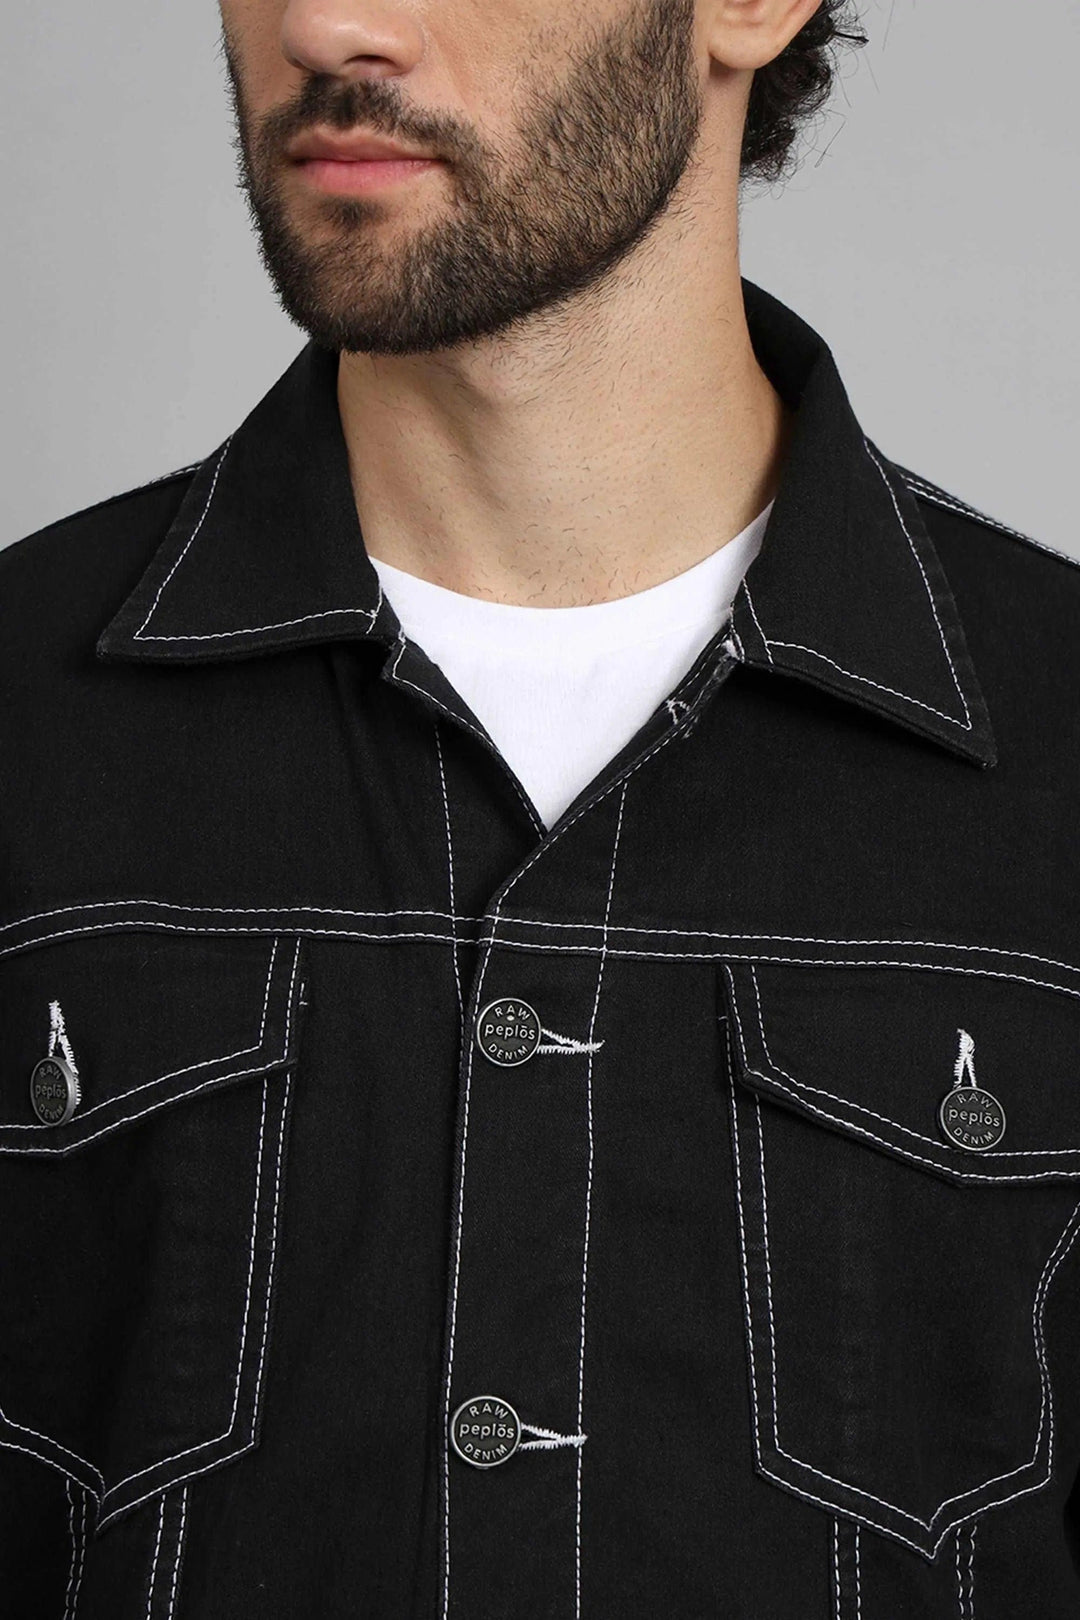 Regular Fit Black Denim Cargo & Jacket Co-ord Set for Men - Peplos Jeans 